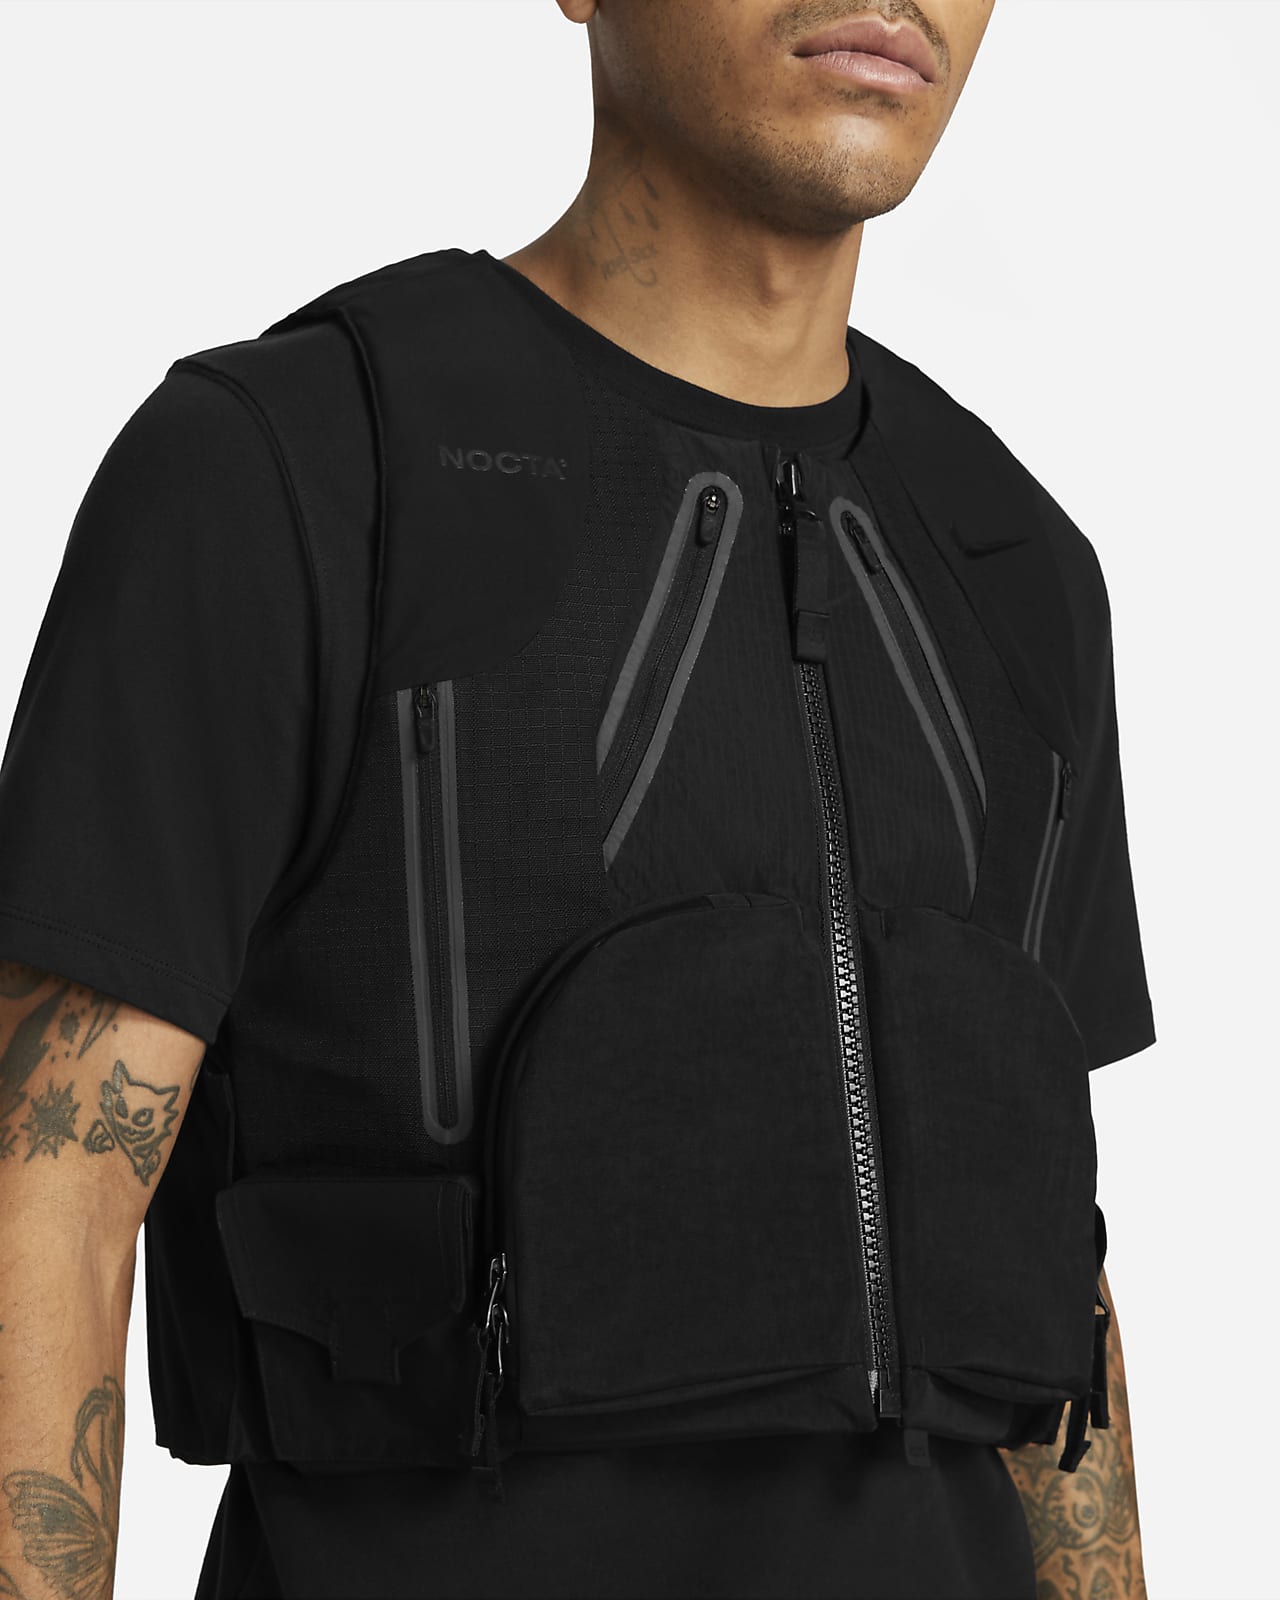 NIKE ナイキ x Drake NOCTA Tactical Vest ドレイク ノクタ タクティカルベスト DA3940-010 ブラック